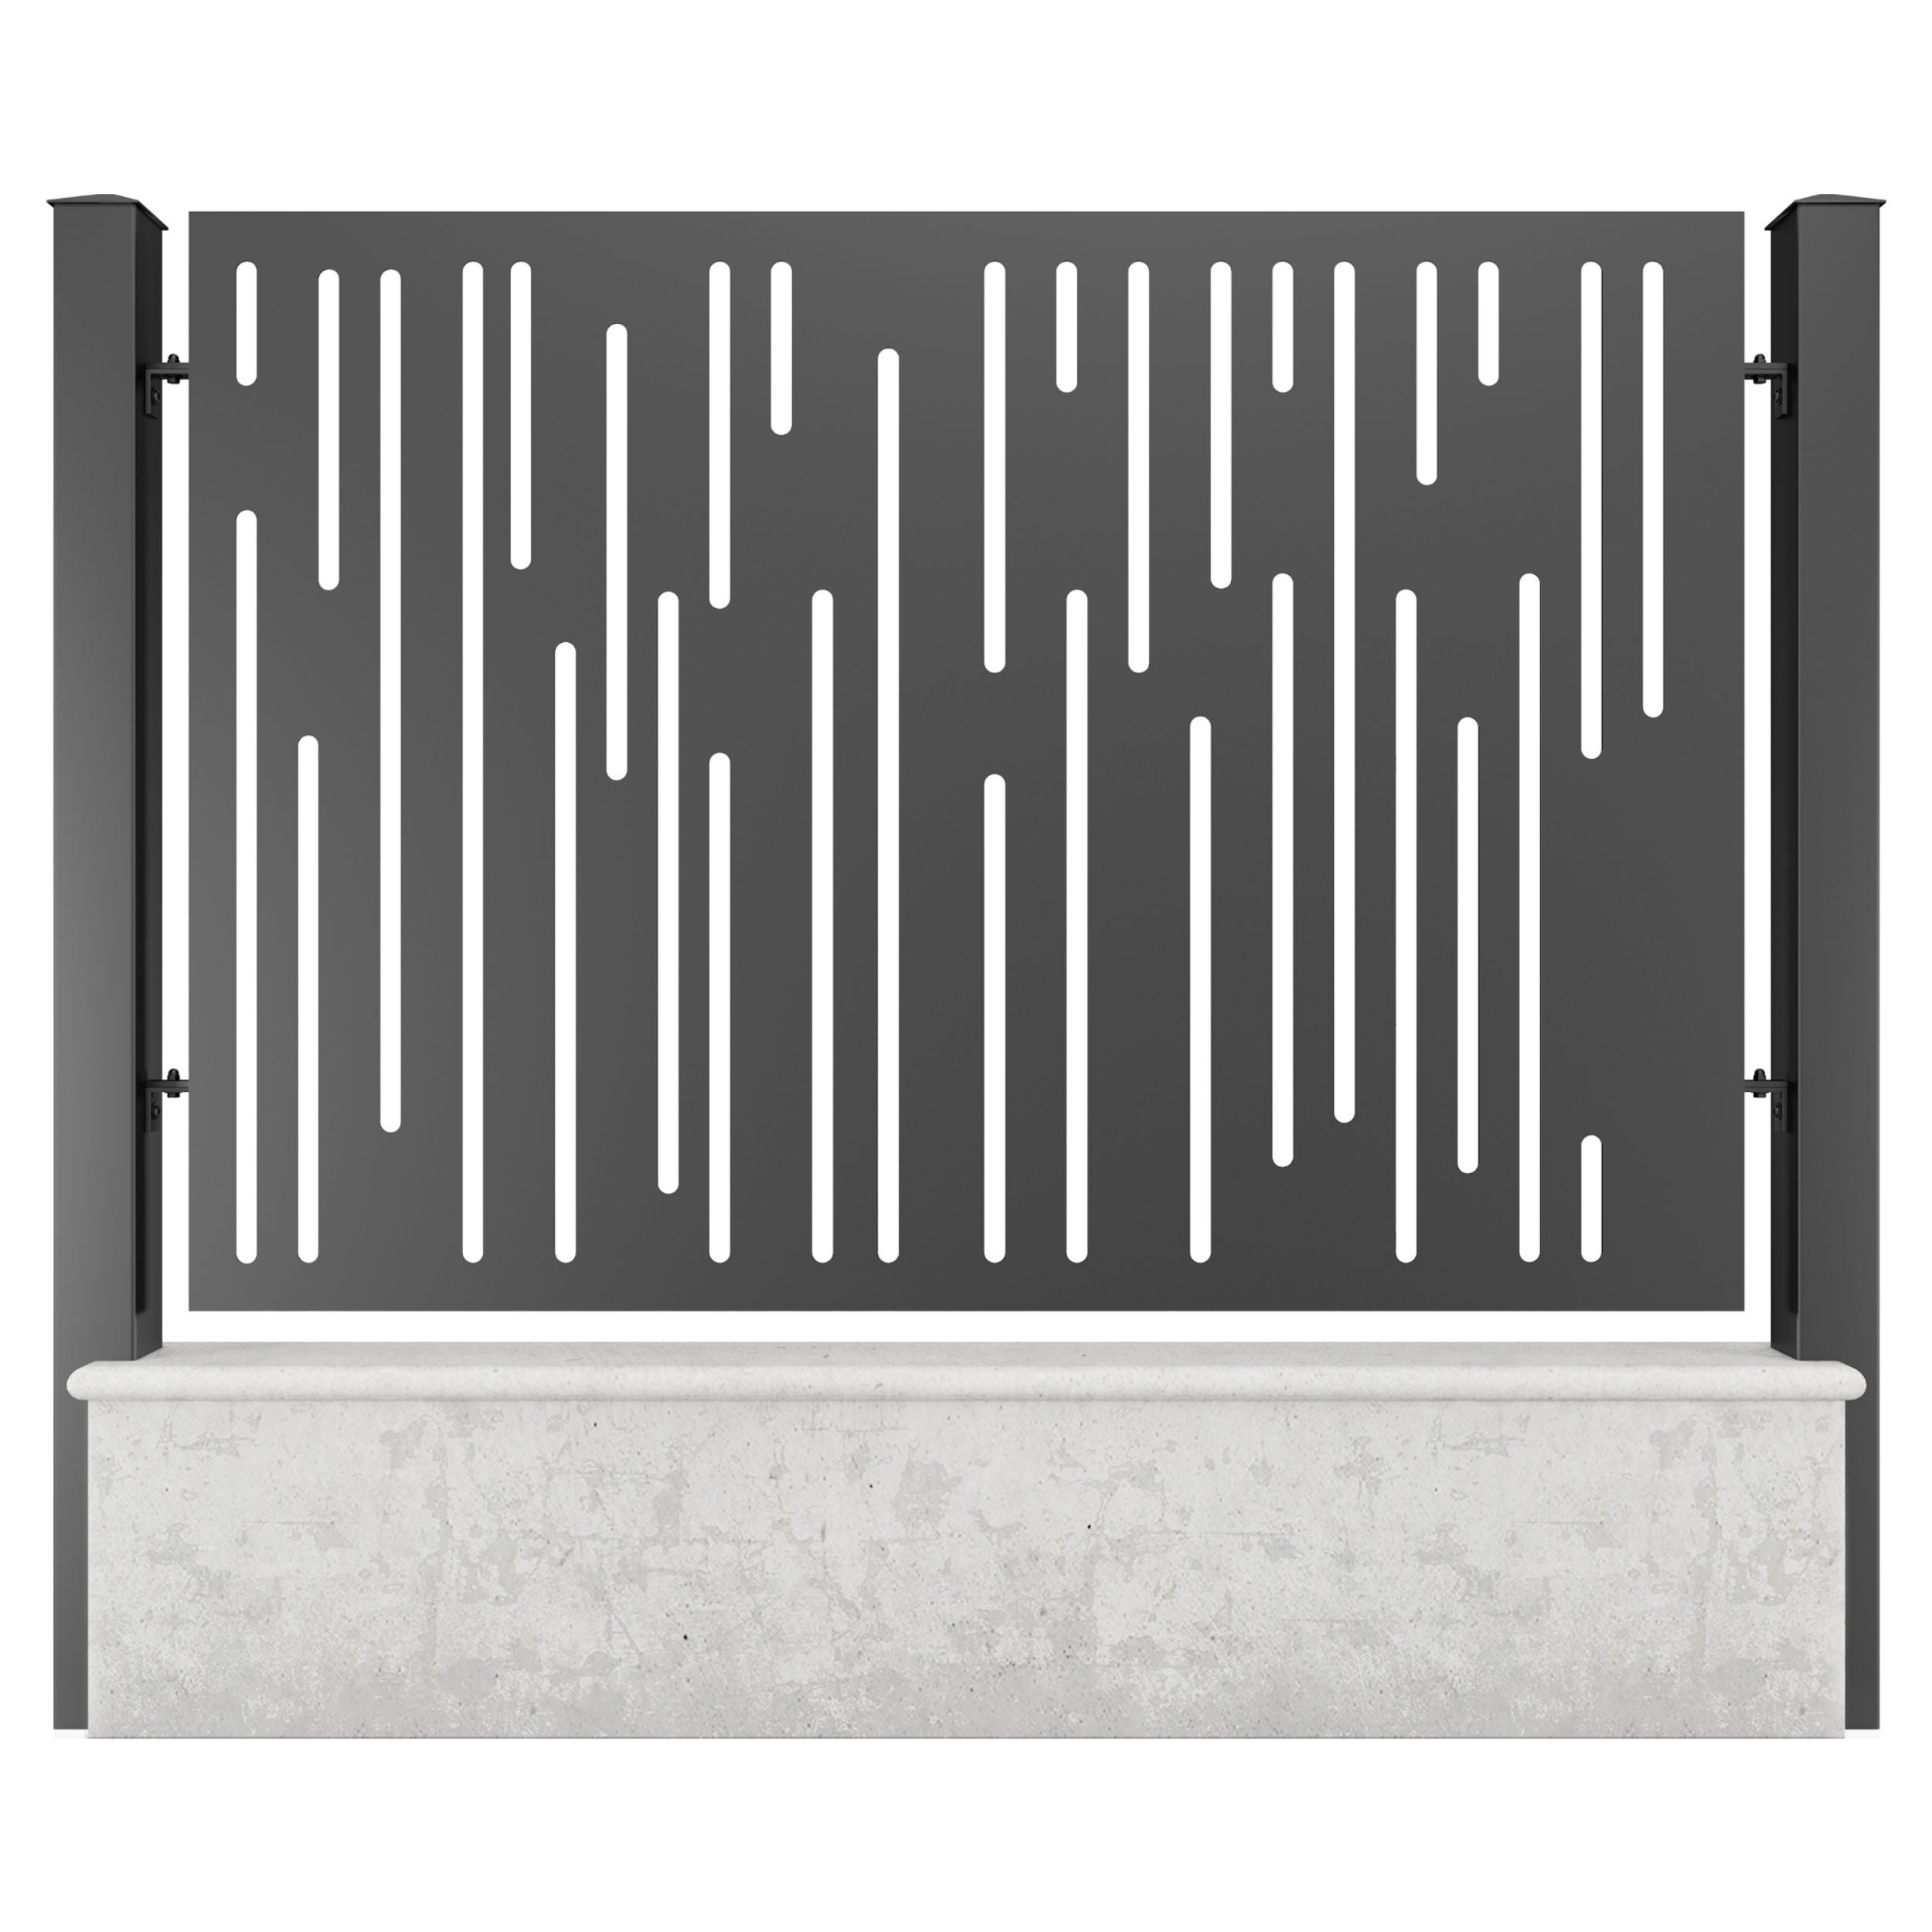 Panou metalic gard din tabla decupata G32A, otel, negru (RAL 9005), 2000 x 1100 mm